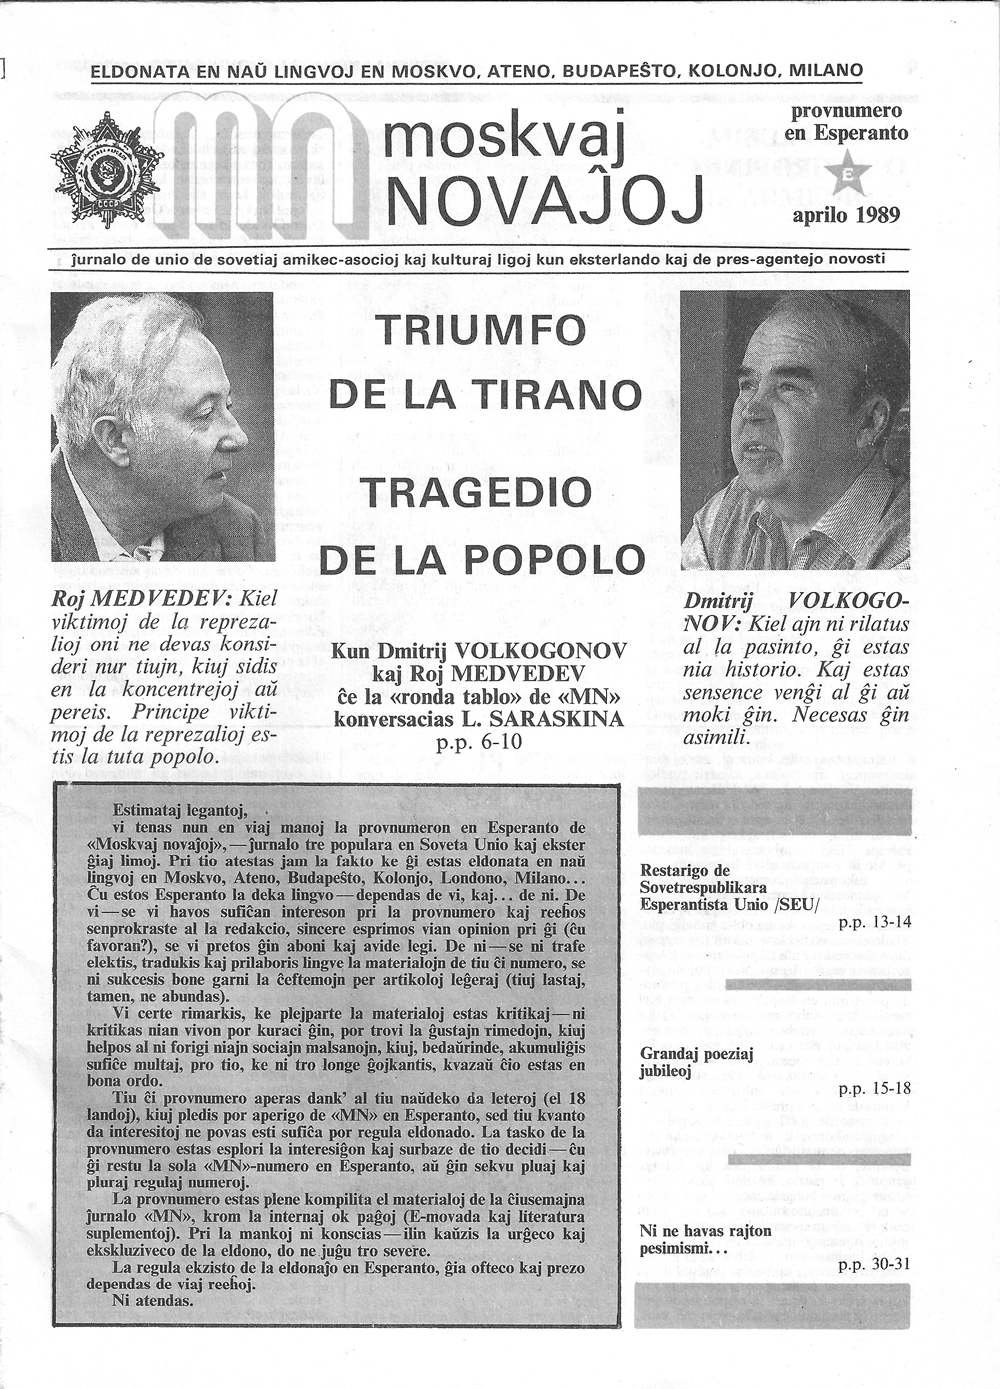 Последний эсперантский выпуск газеты «Московские новости»